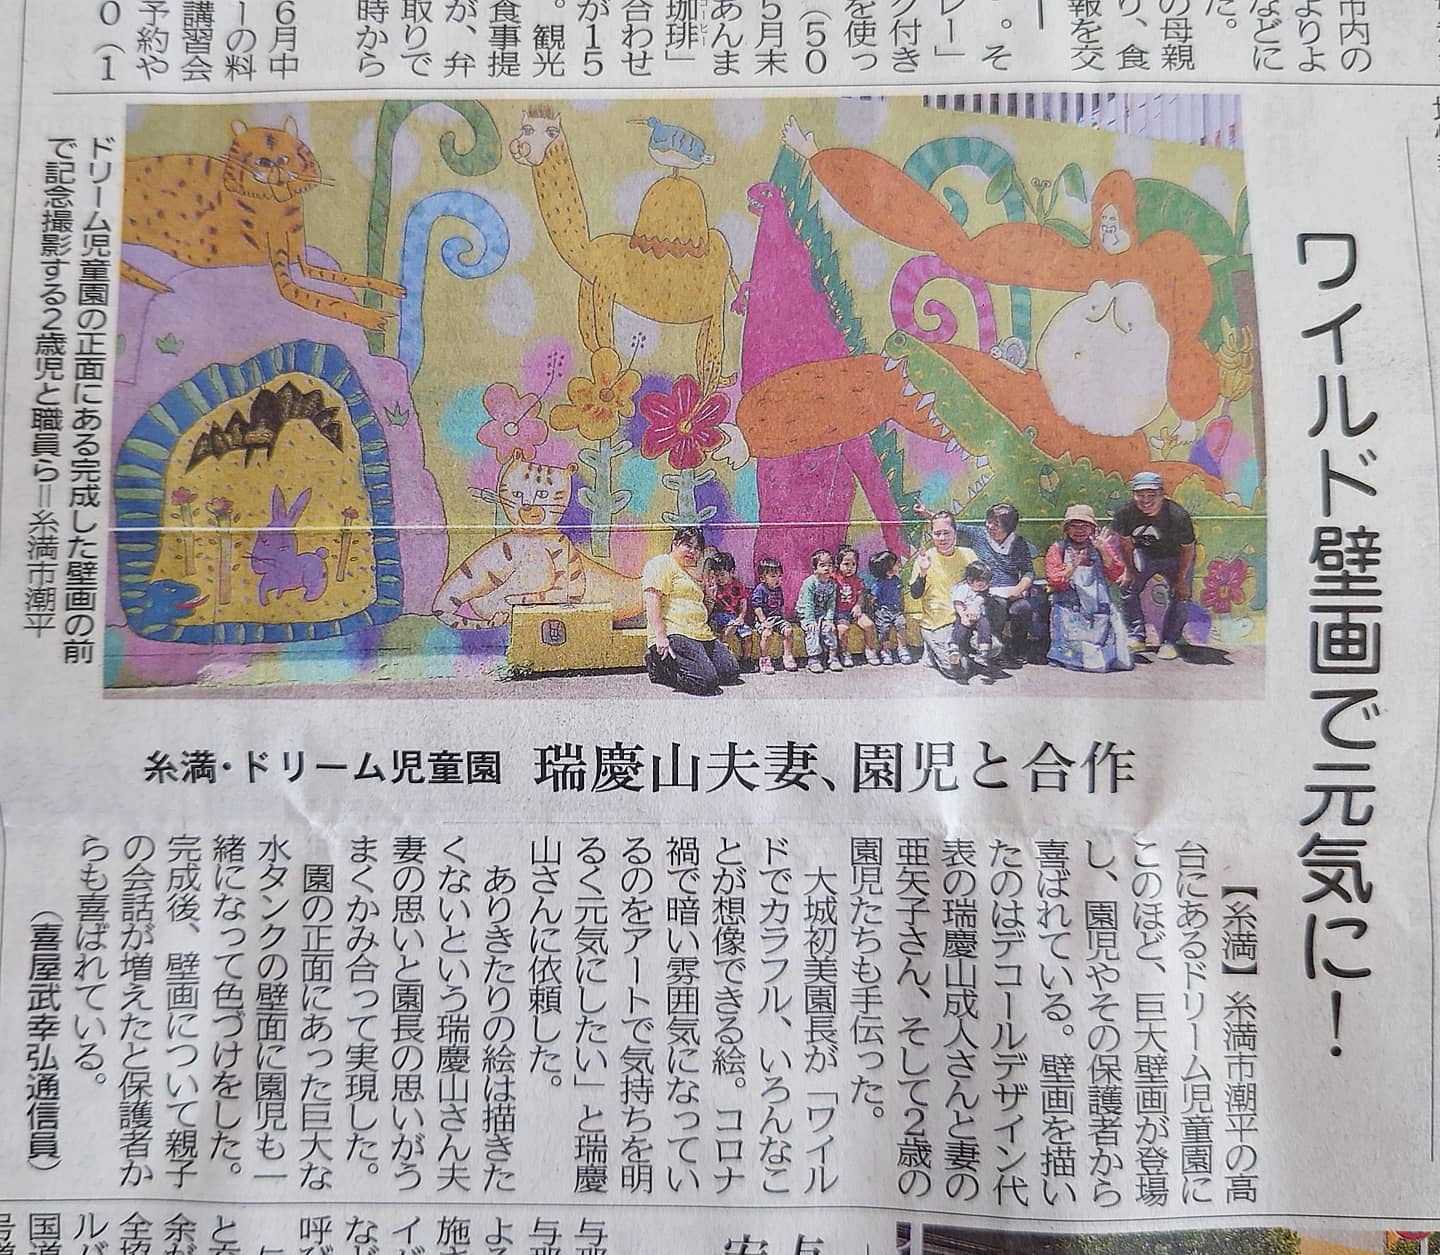 ワイルド壁画 琉球新報に掲載されました